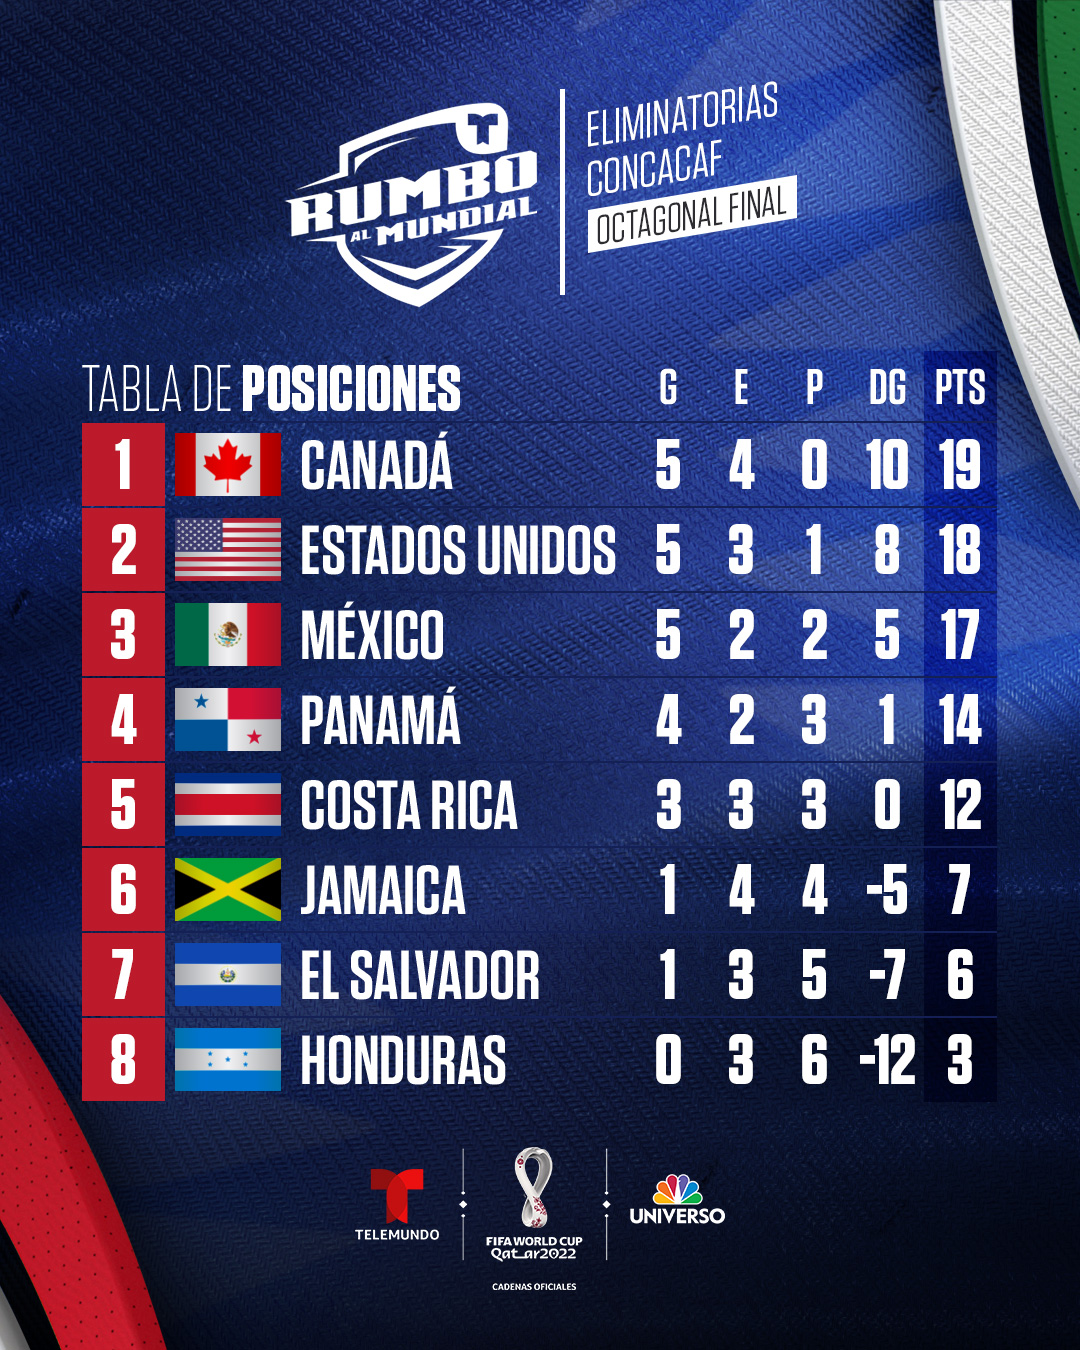 X 上的 Telemundo Deportes：「. @ClubAmerica domina la tabla de más